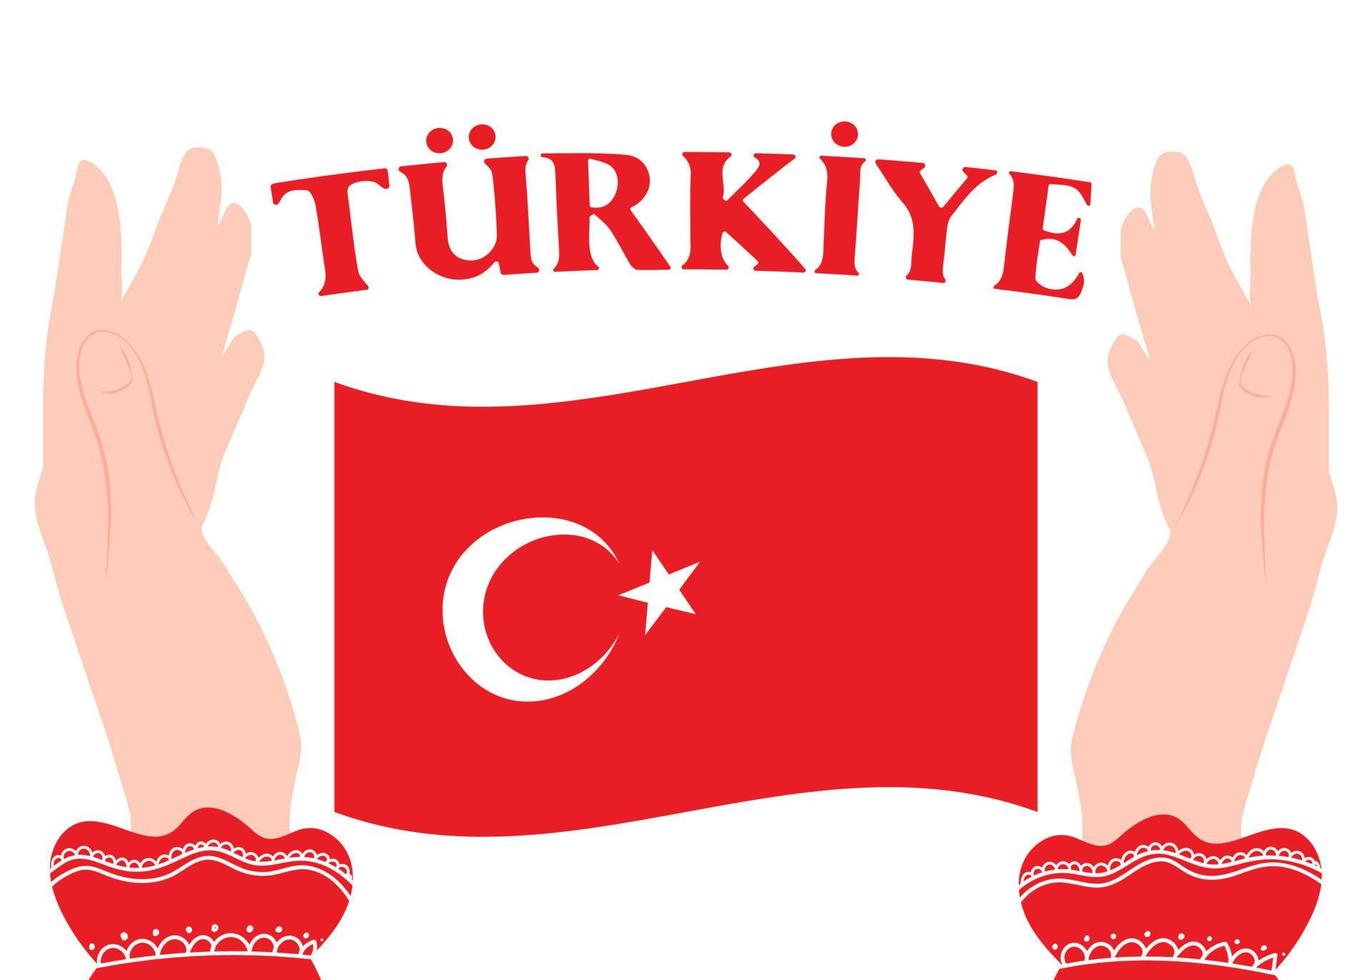 Turquia de inscrição turca e a bandeira da Turquia em um fundo branco. vetor